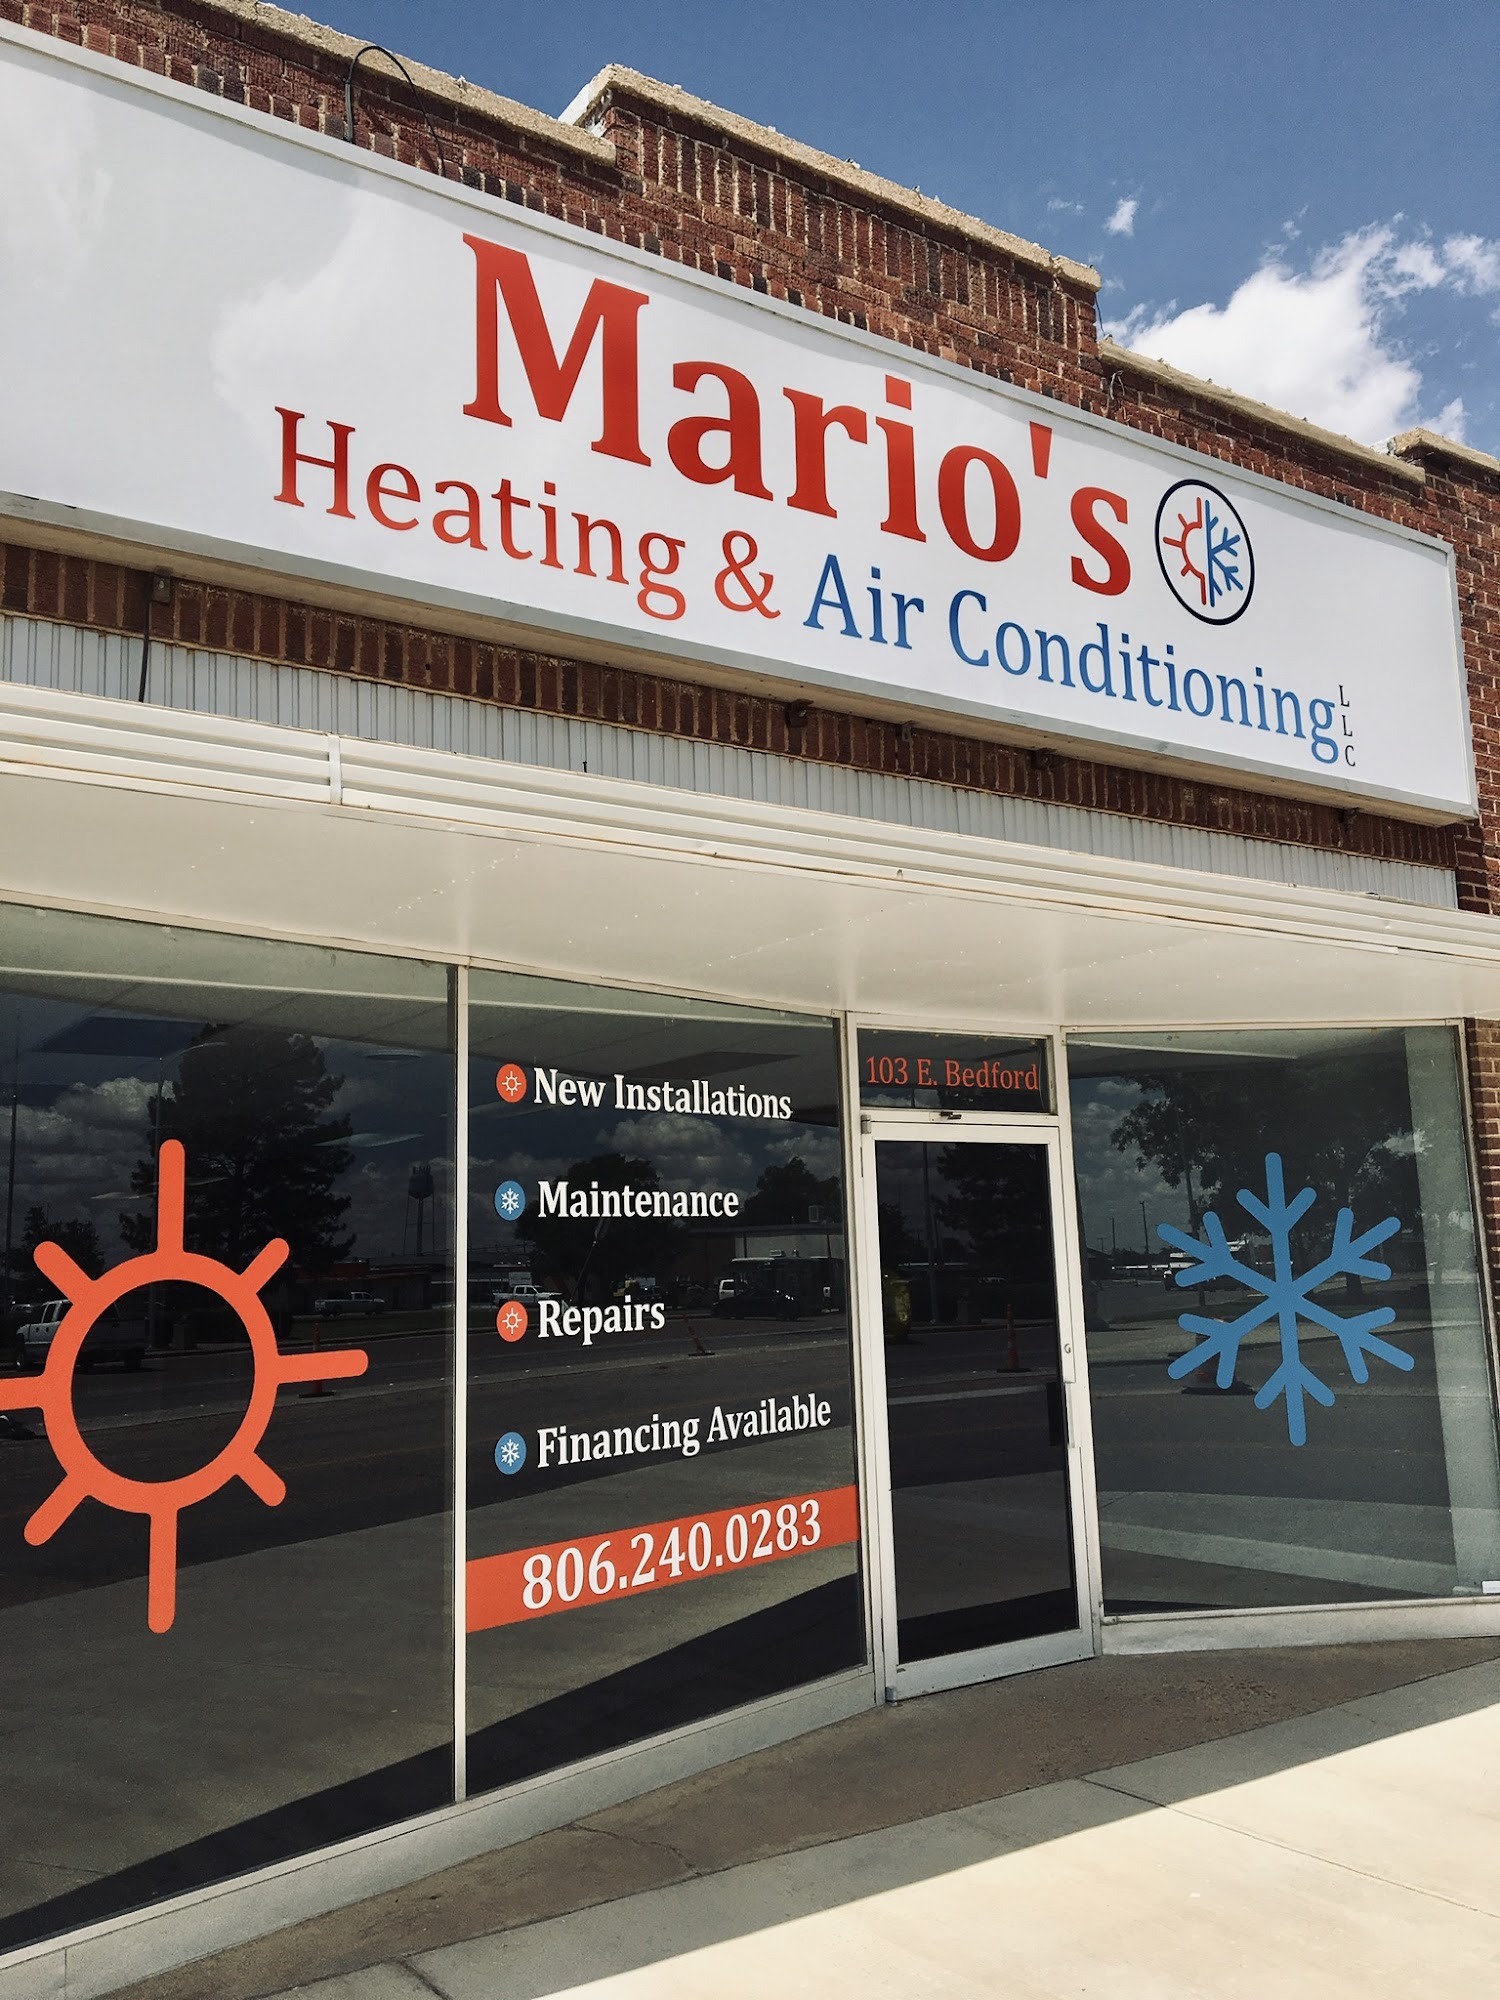 Marios Heating & Air Conditioning 103 E Bedford St, Dimmitt Texas 79027